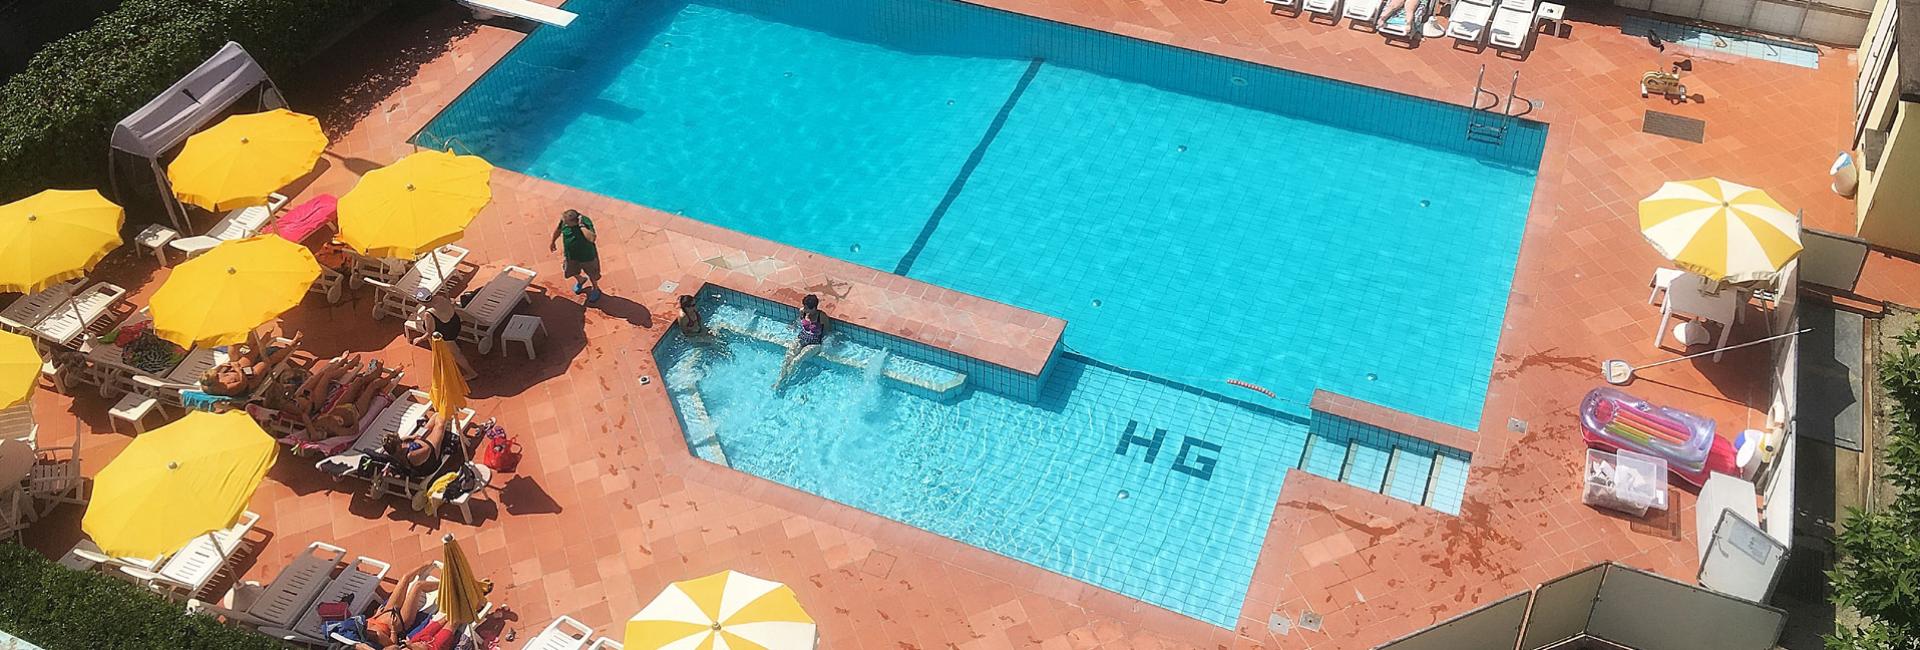 hotelgraziella it hotel-con-piscina-torre-pedrera 002